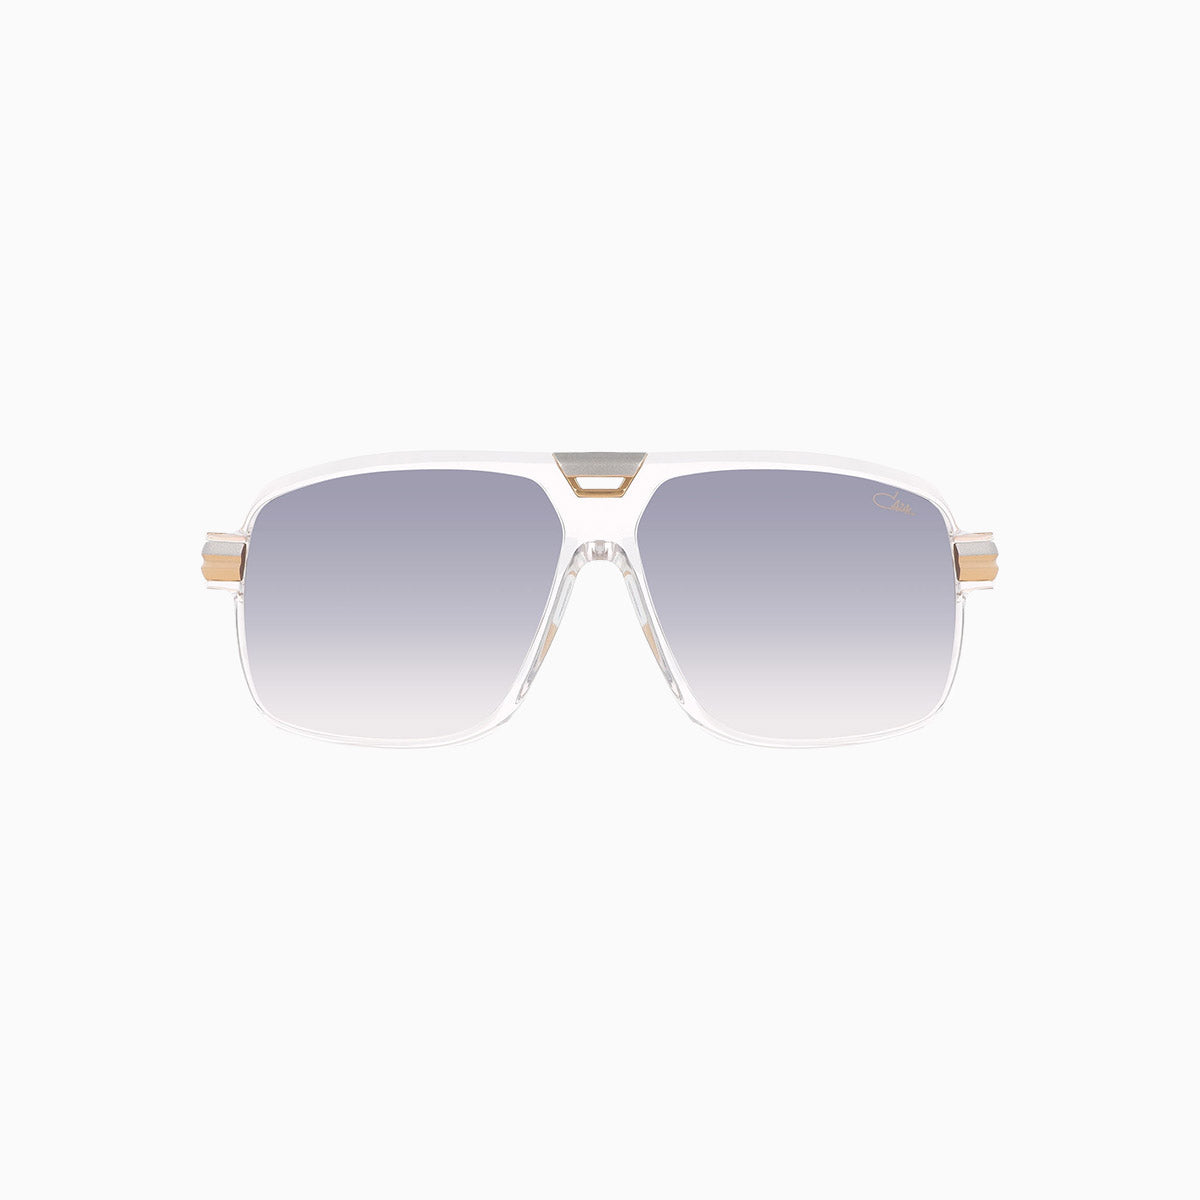 cazal-eyewear-mod-6032-3-cazal-crystal-sunglasses-6032-3-004